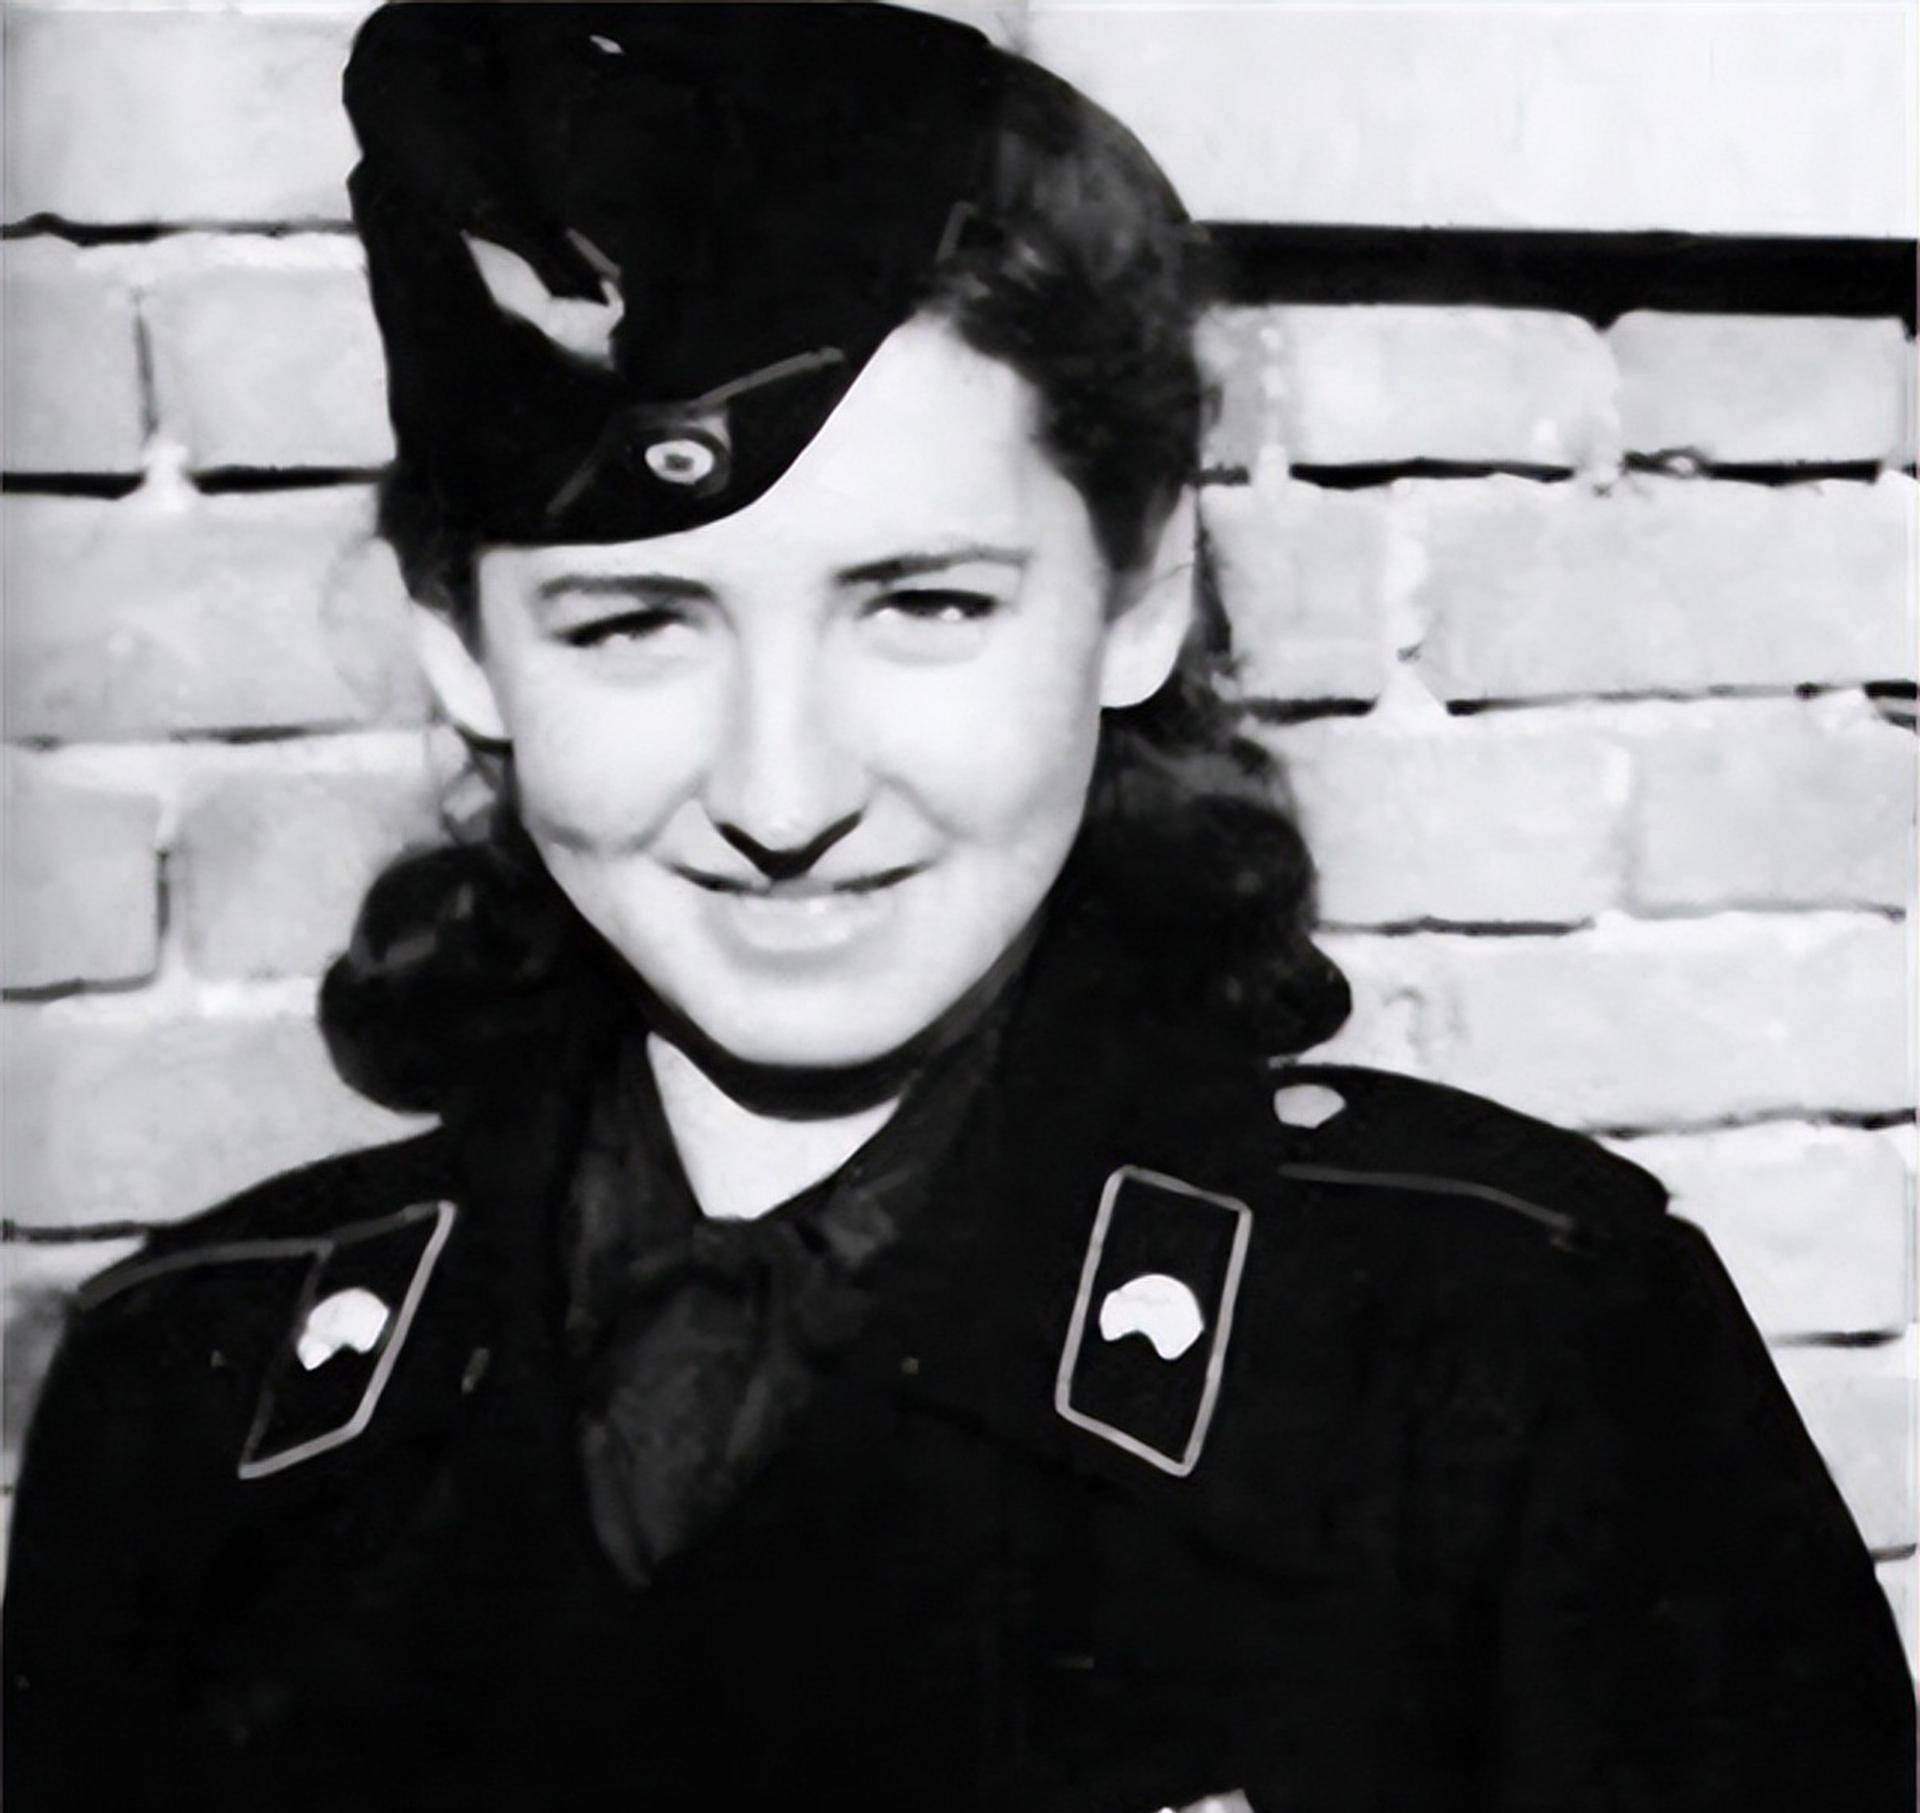 二战后,德国纳粹党一女护士被判死刑,临刑前向法官提出无耻请求